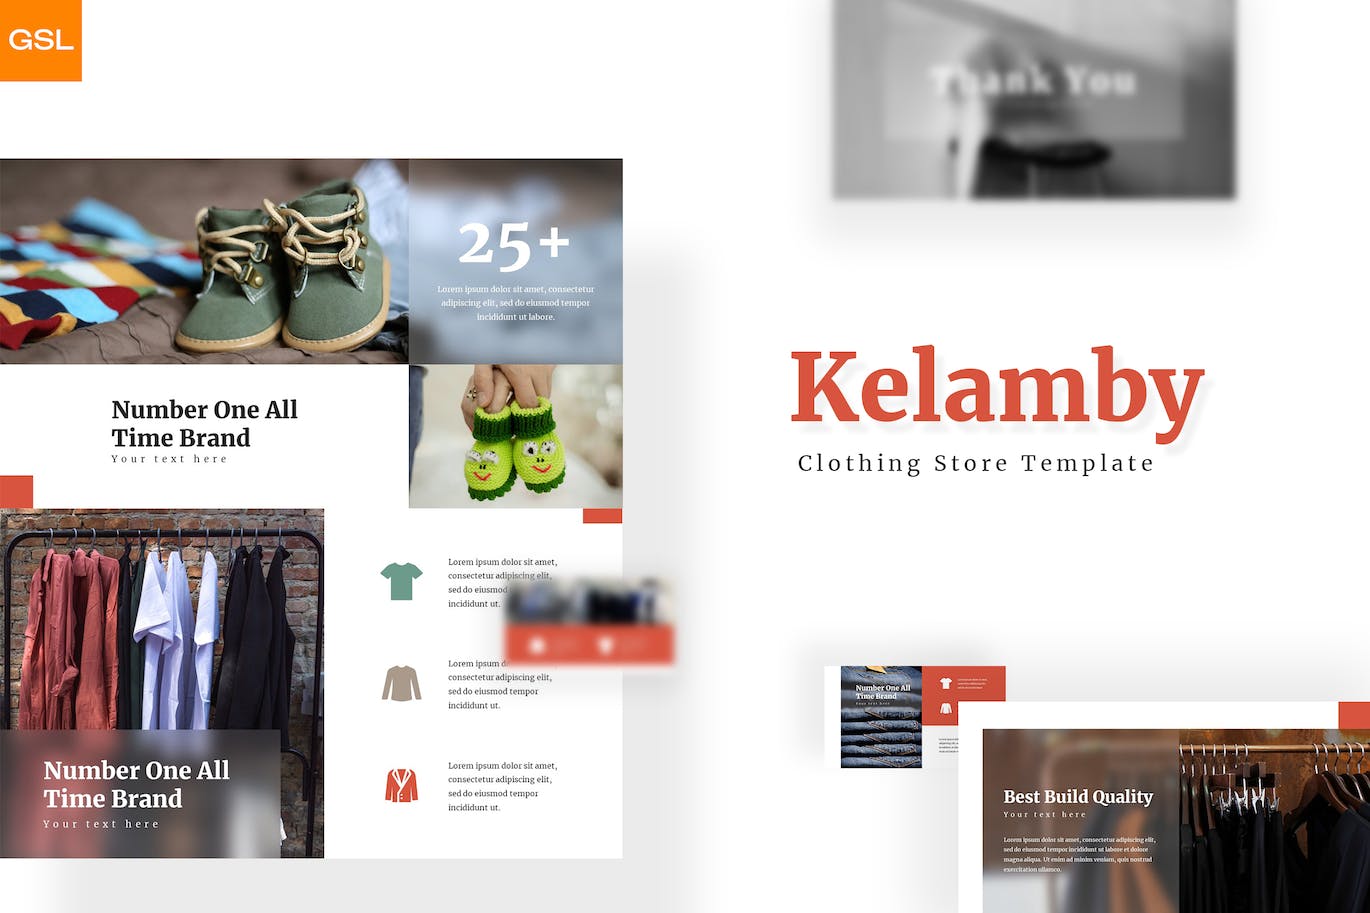 服装鞋店产品谷歌幻灯片设计模板 Kelamby – Google Slides Template 幻灯图表 第1张